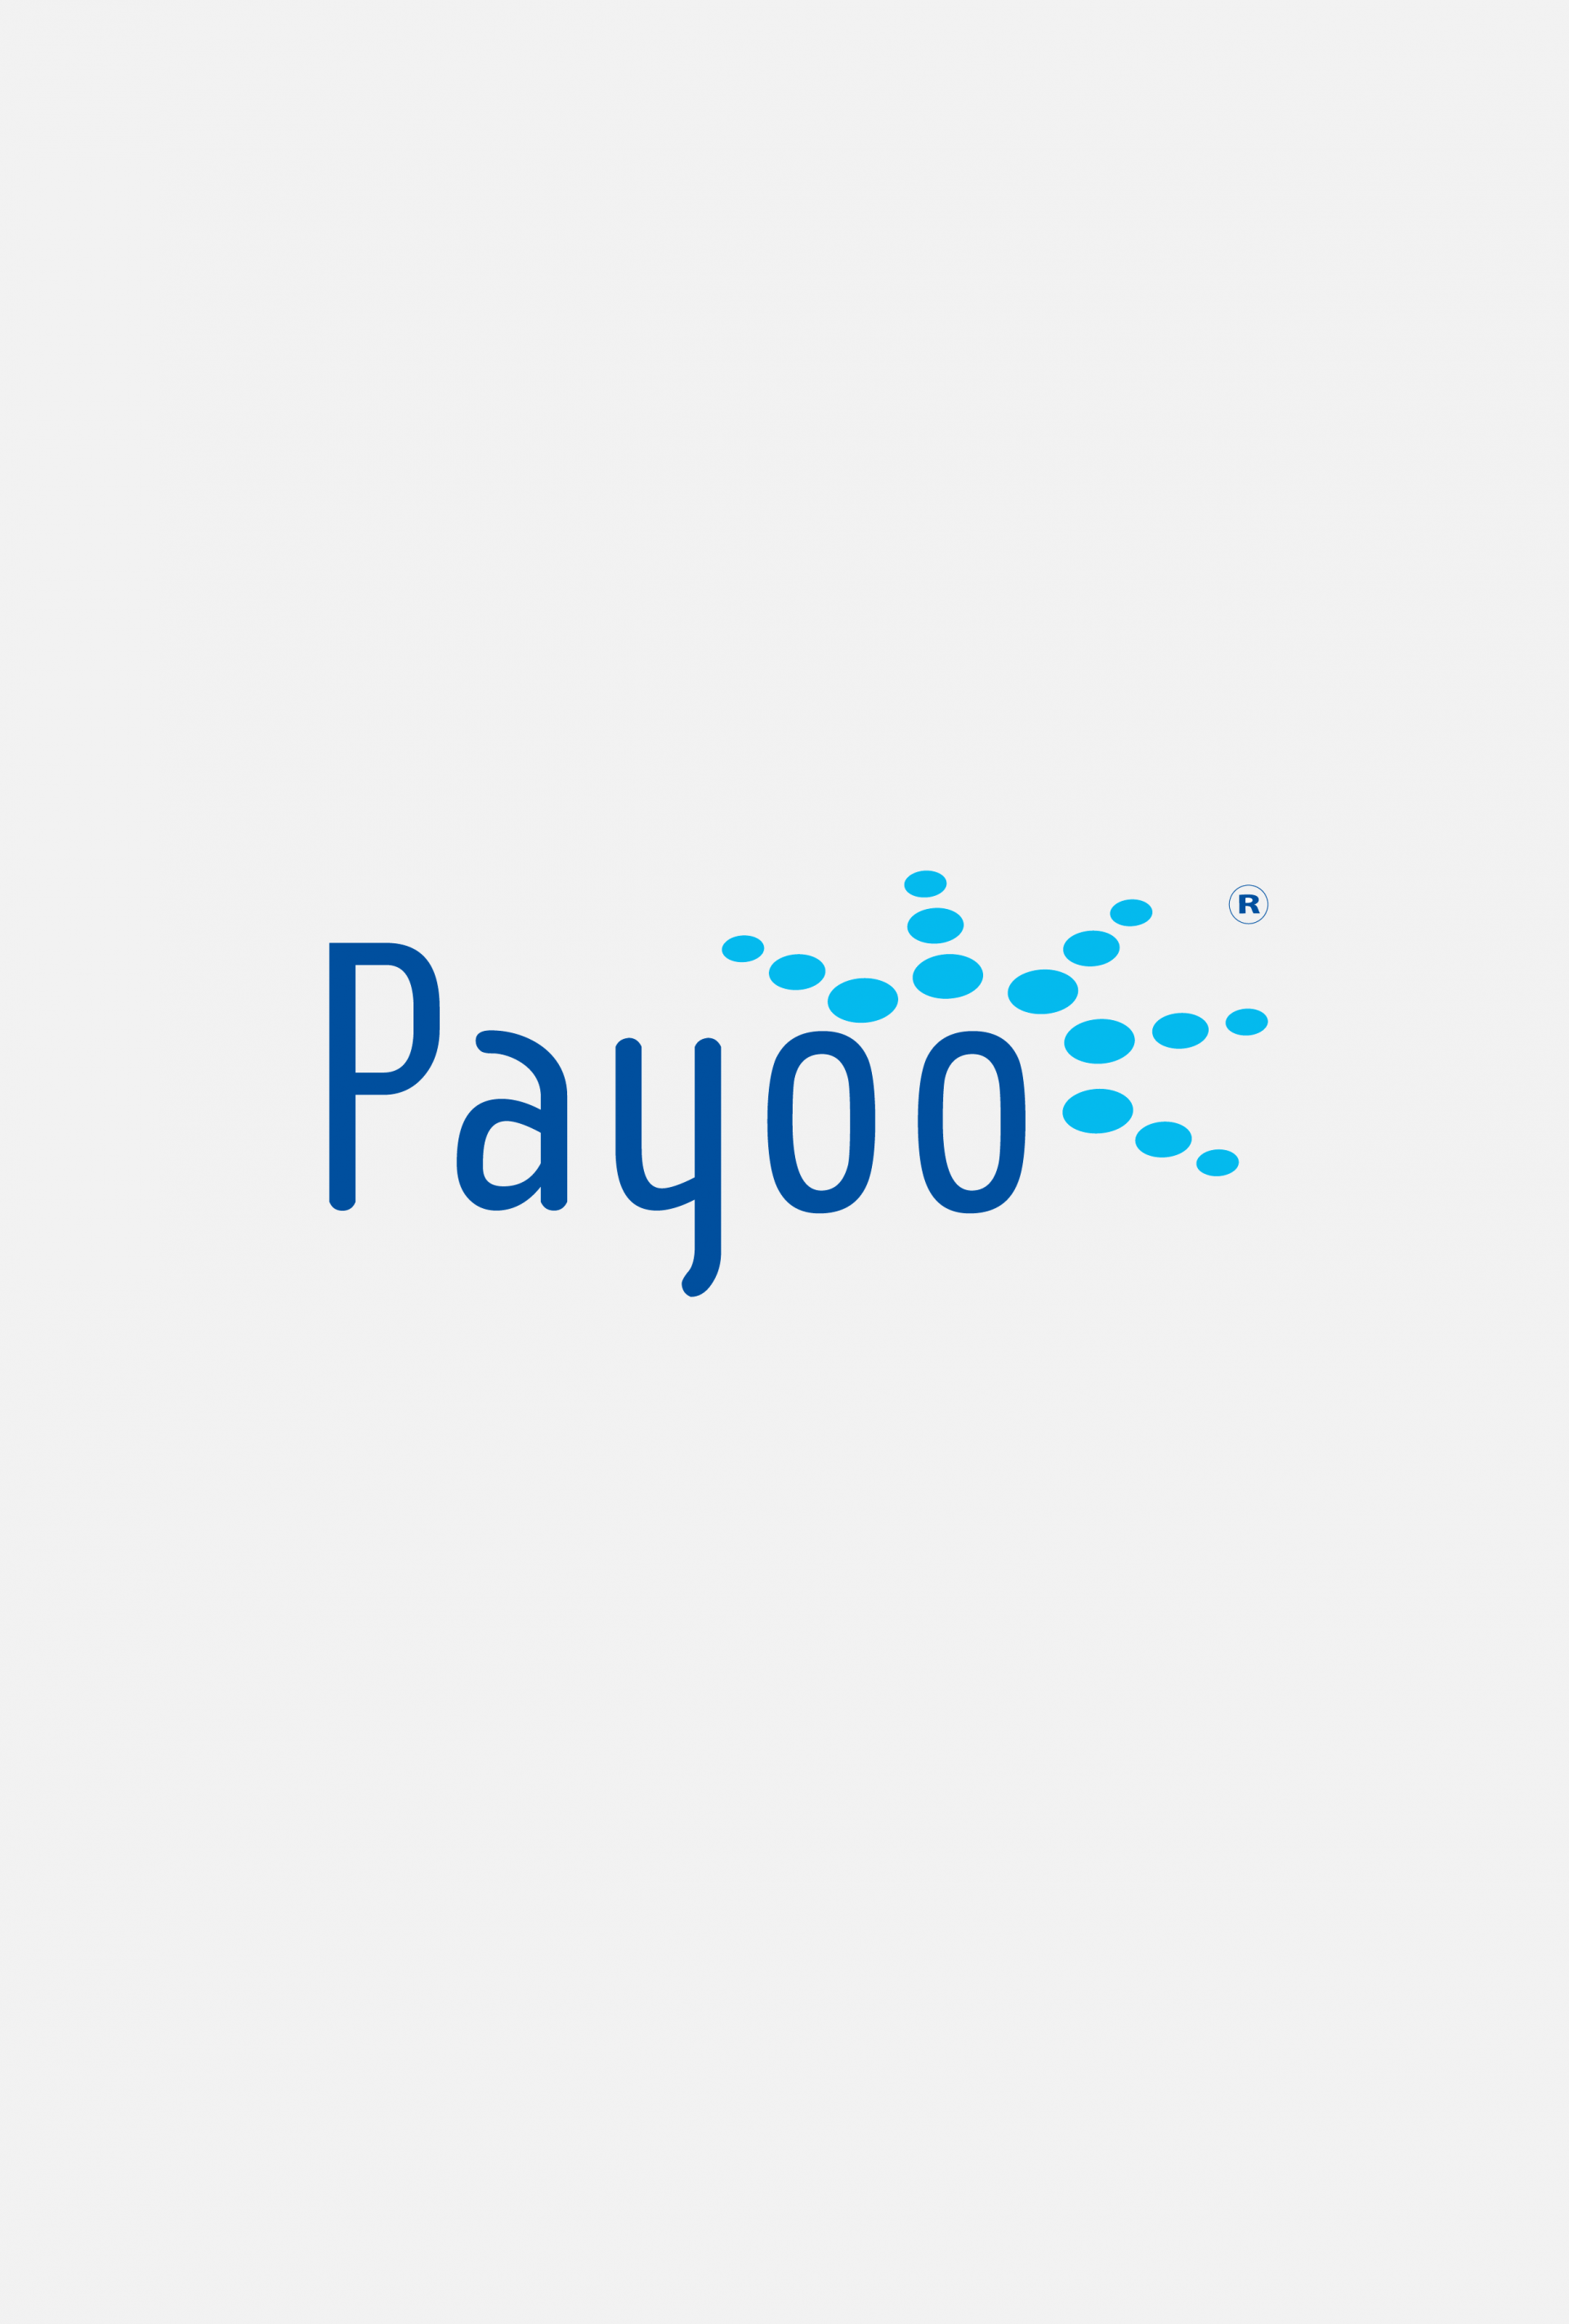 payoo - Mob